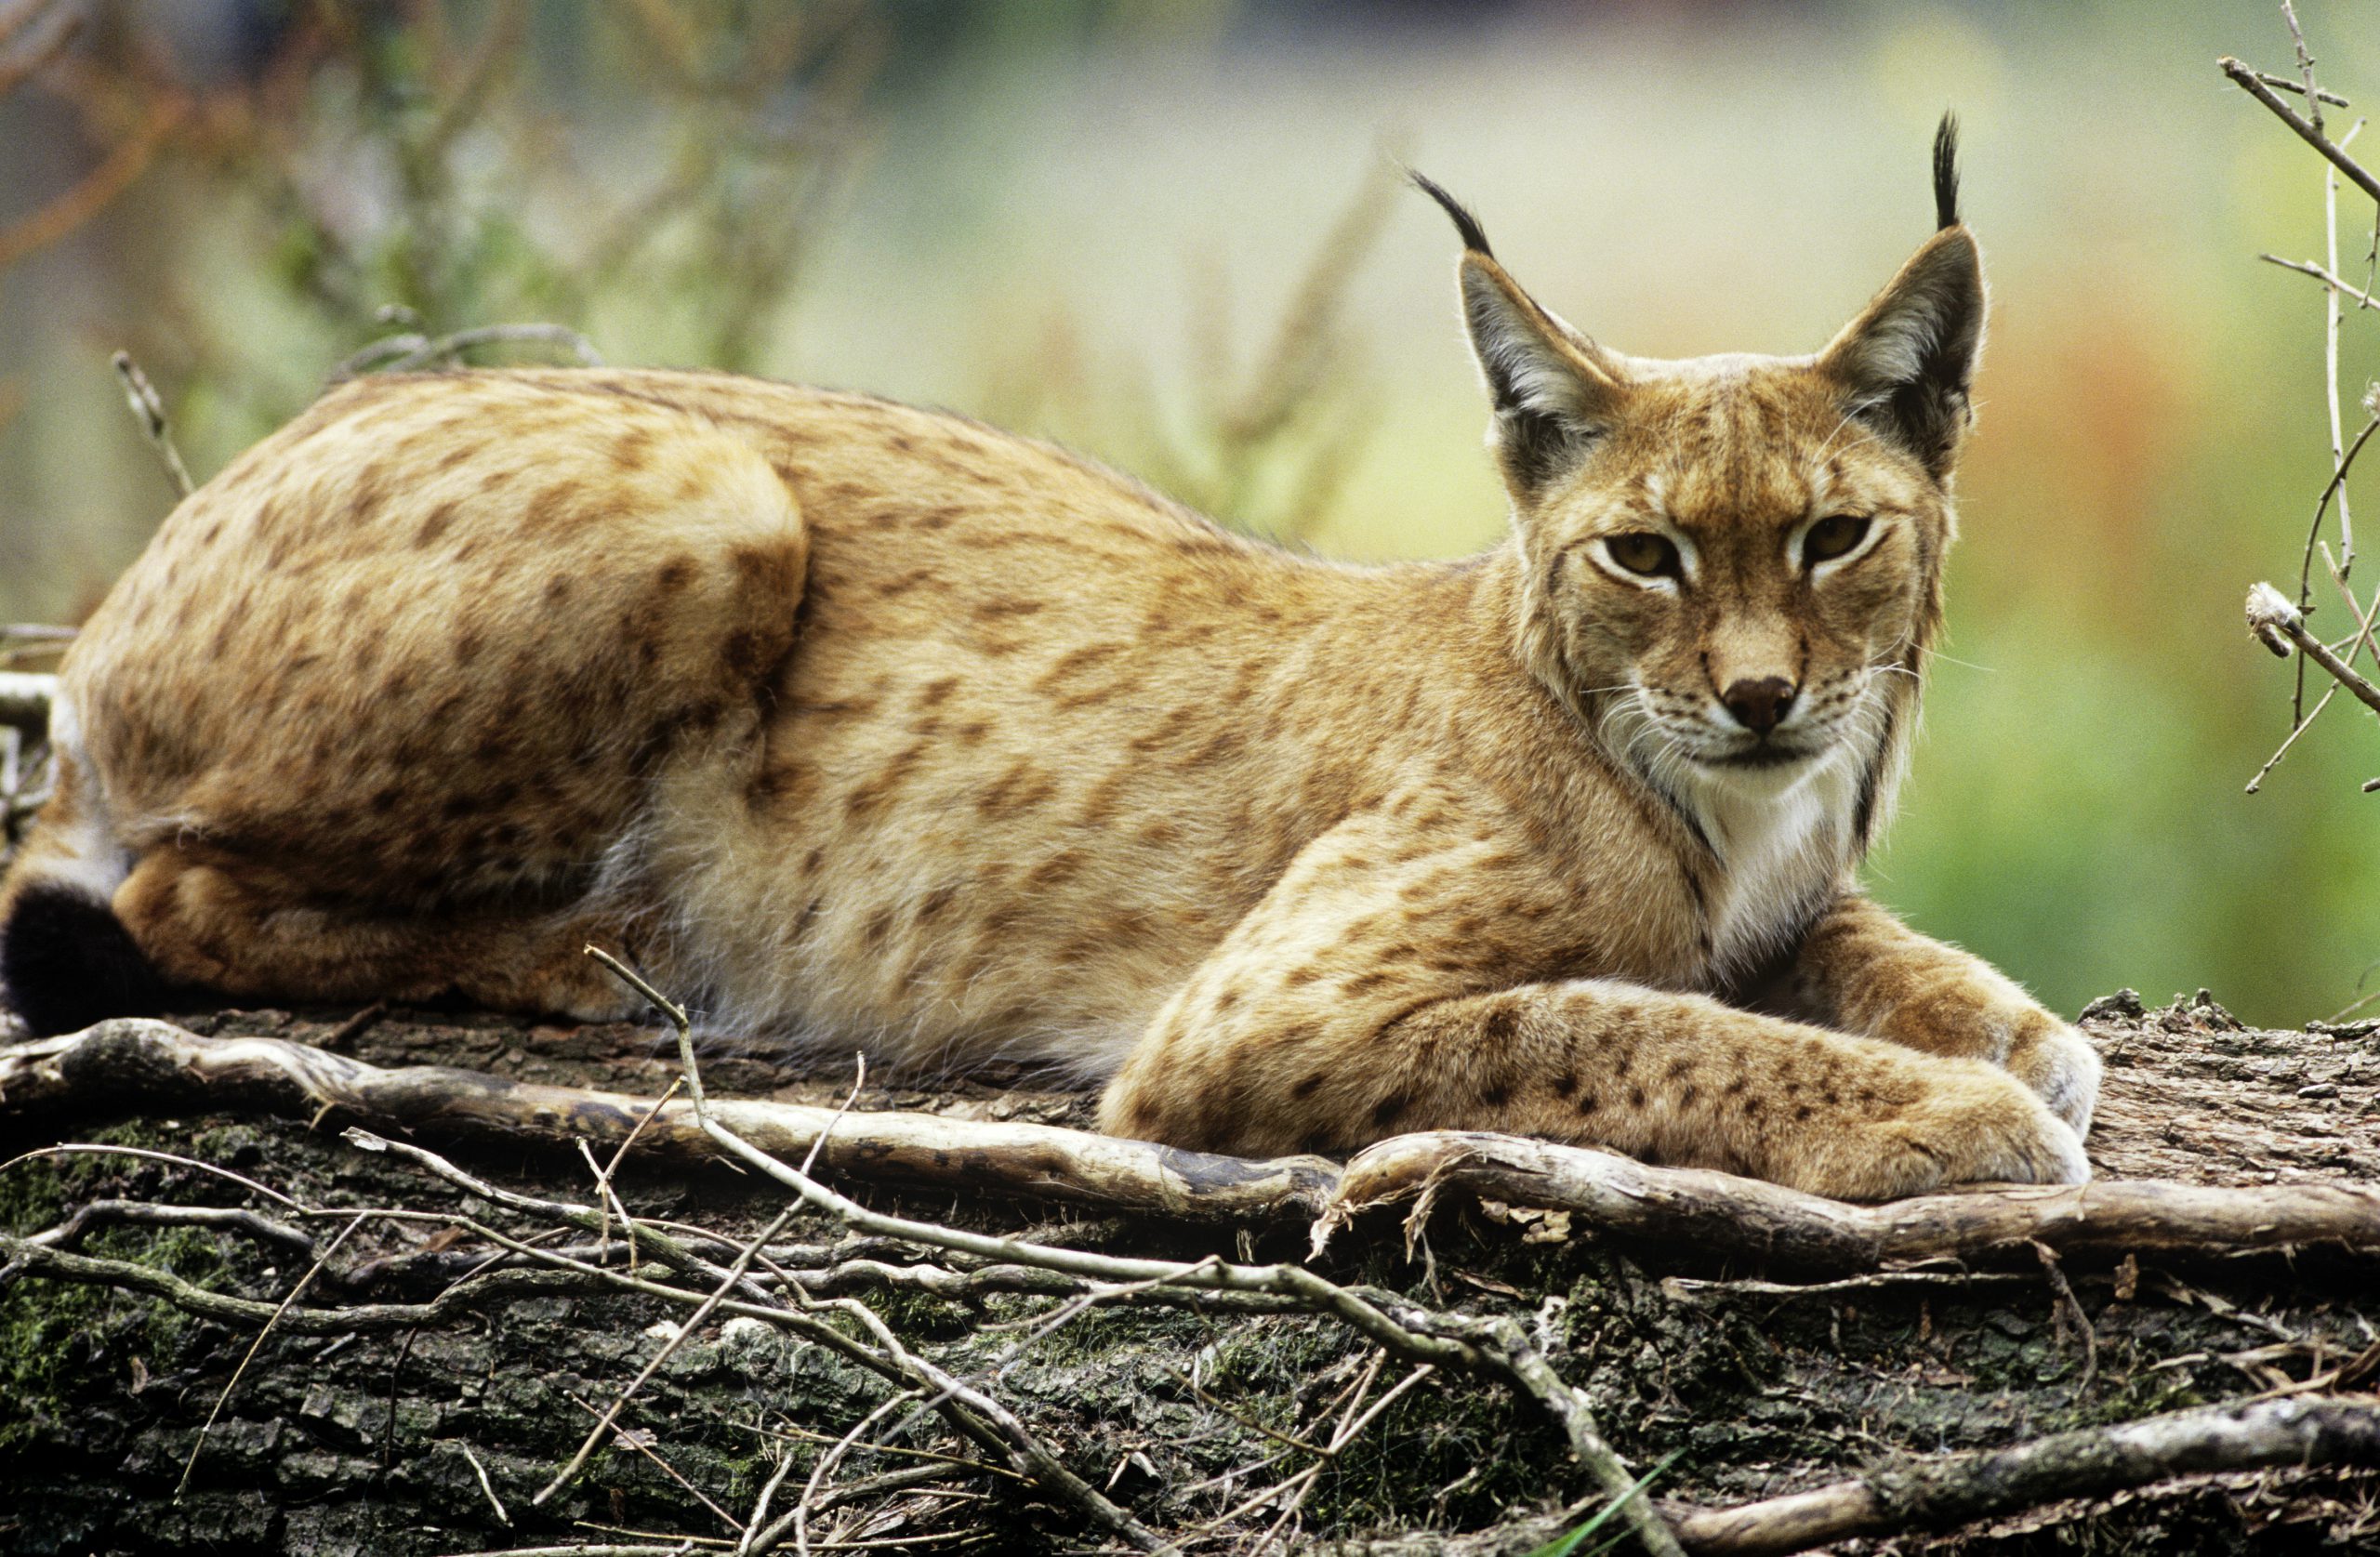 Ры́си (лат. Lynx) — род хищных млекопитающих семейства кошачьих, наиболее близкий к роду кошек (Felis)